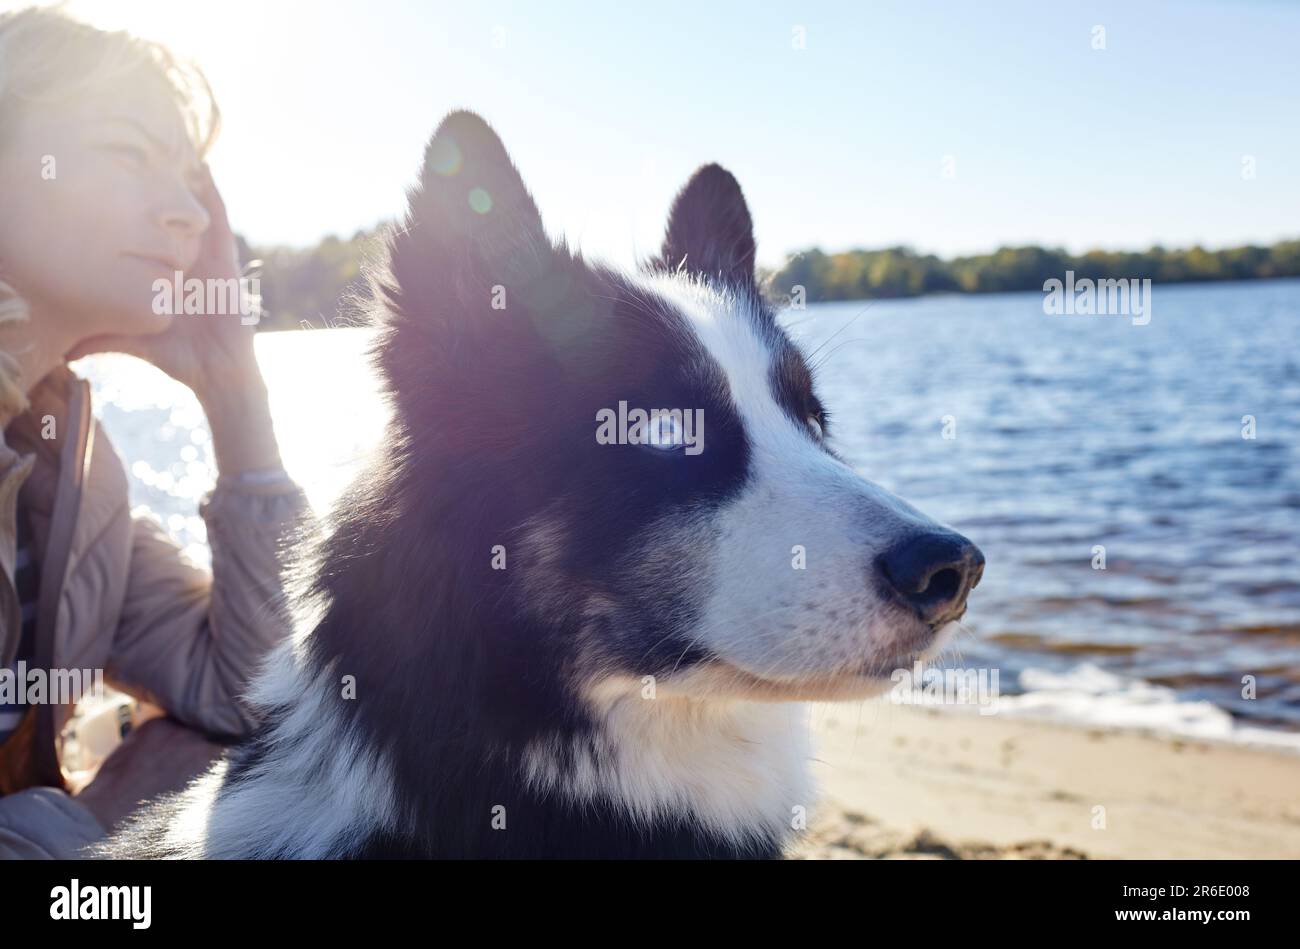 Propriétaire avec un chien de laika sibérien sur une plage. Amitié d'un chien et d'une femme Banque D'Images